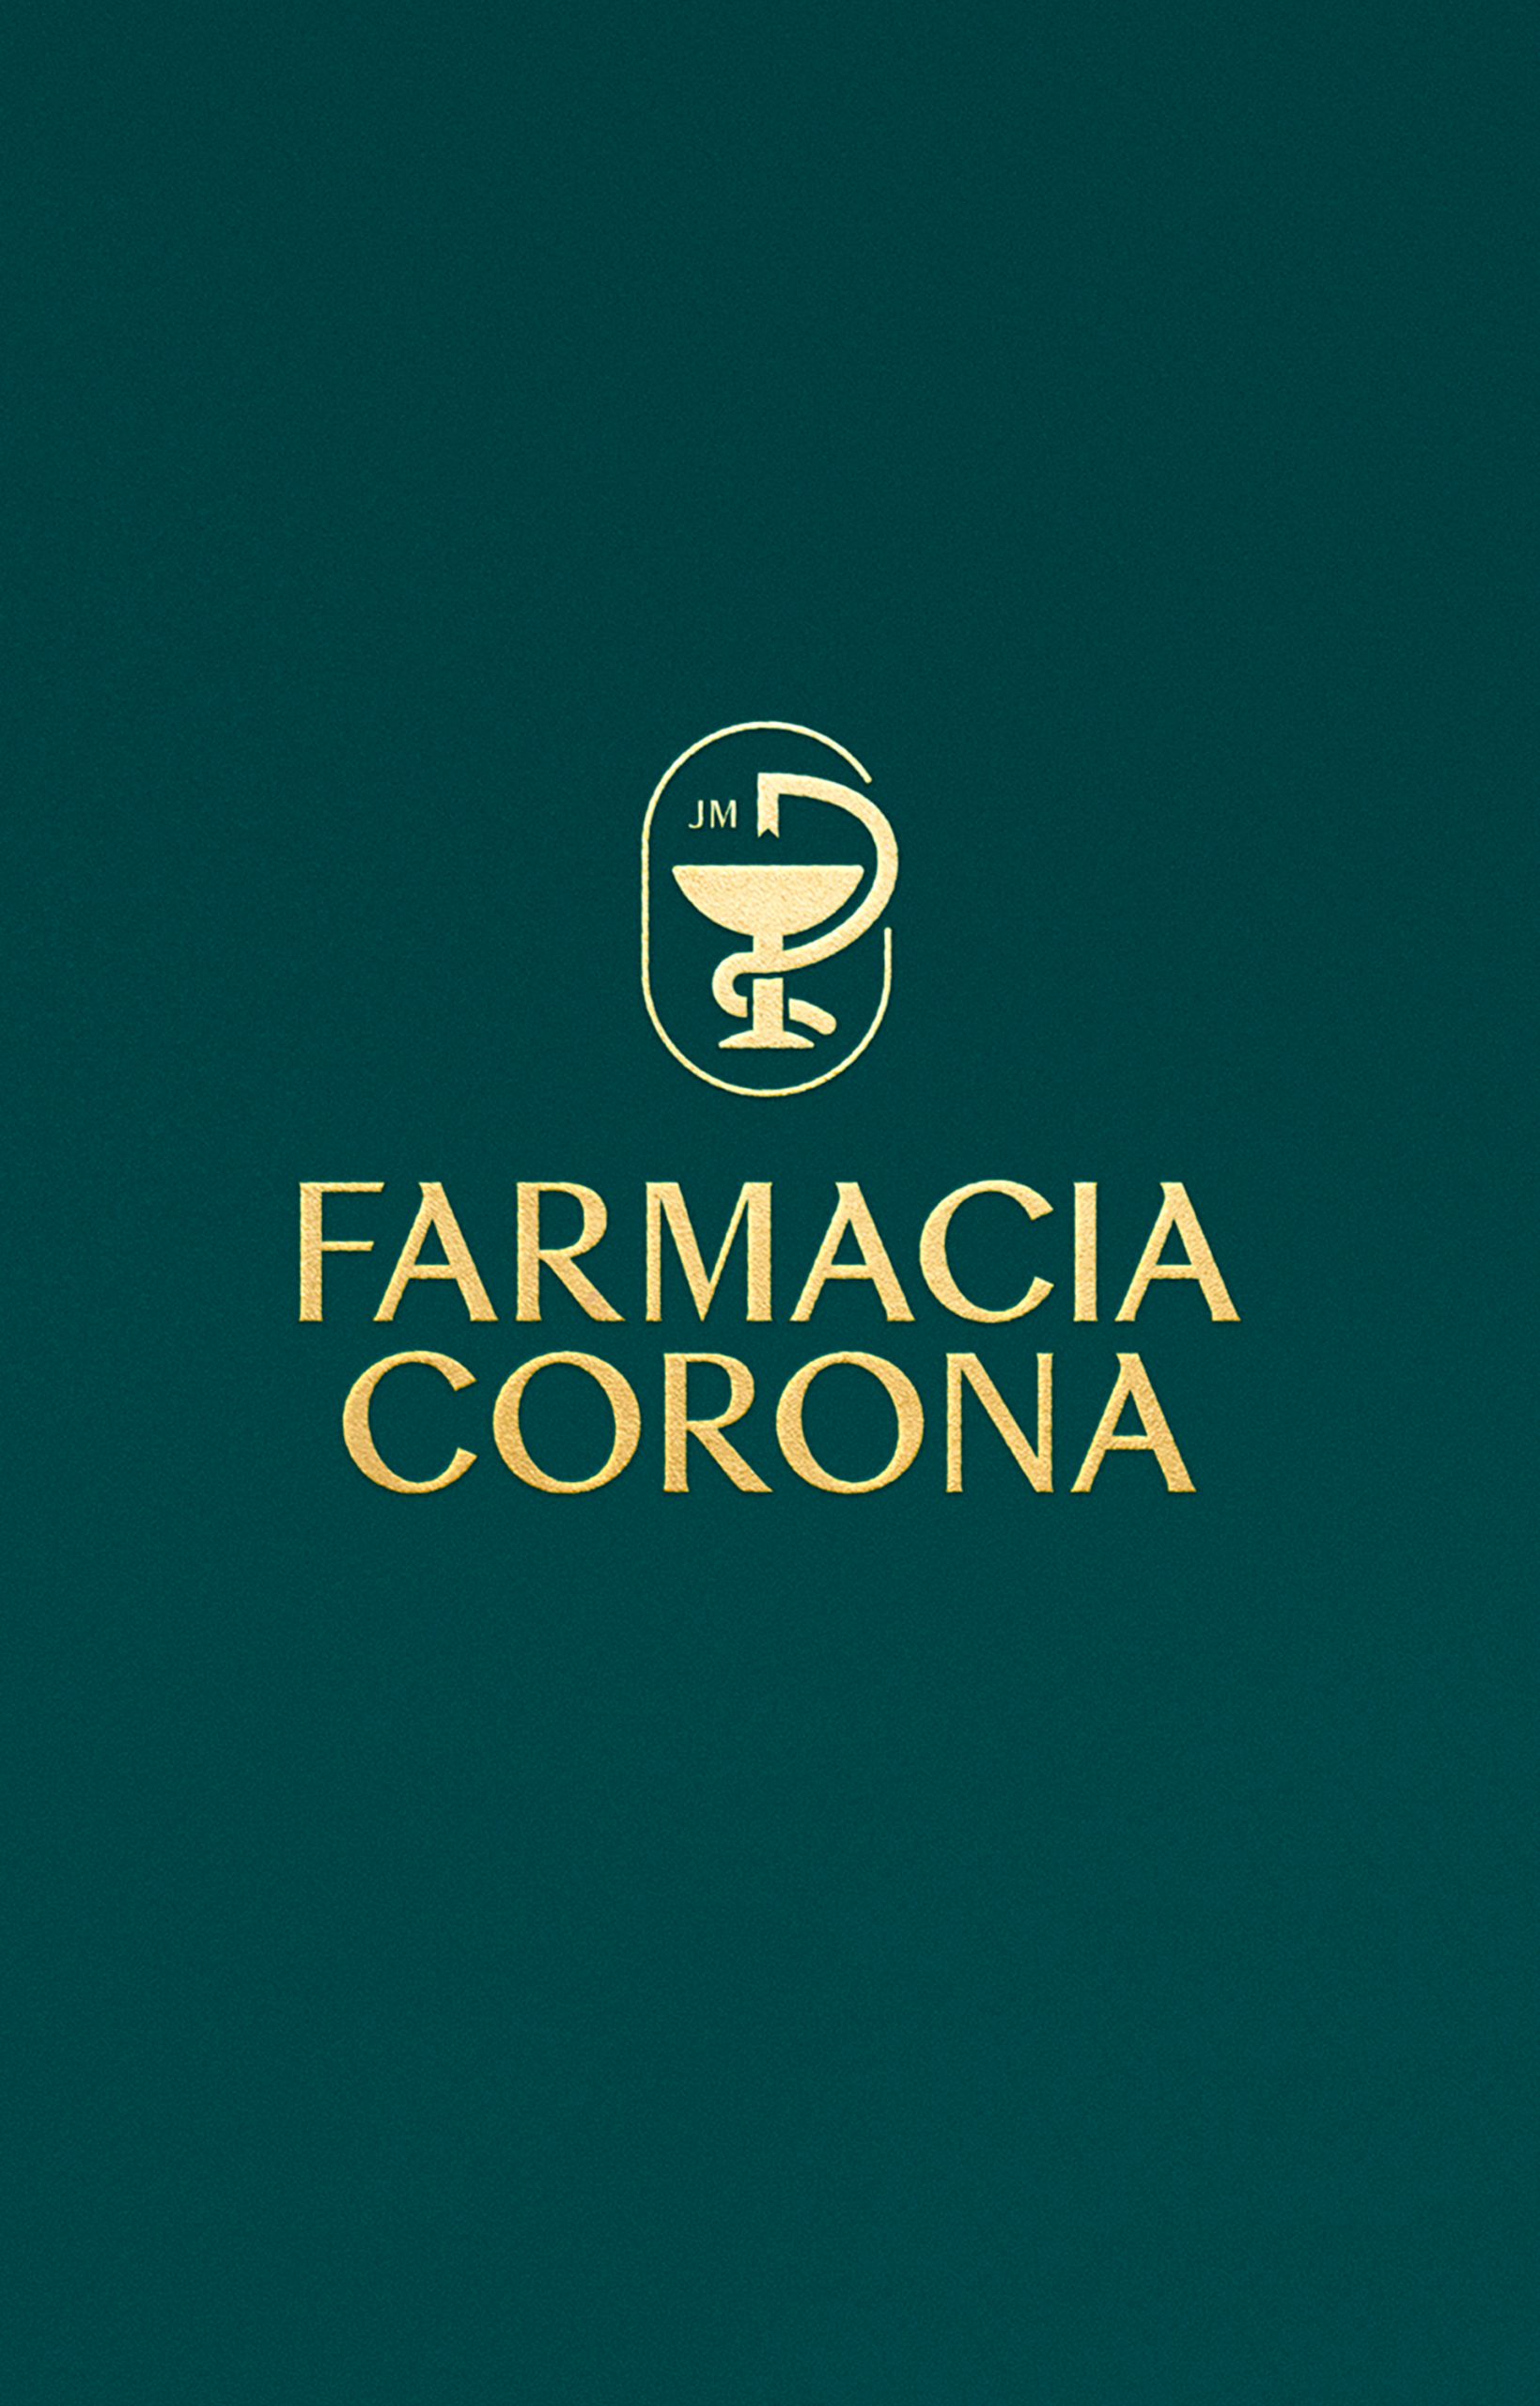 Diseño de identidad corporativa Farmacia Corona - Pixelarte estudio de diseño Valencia